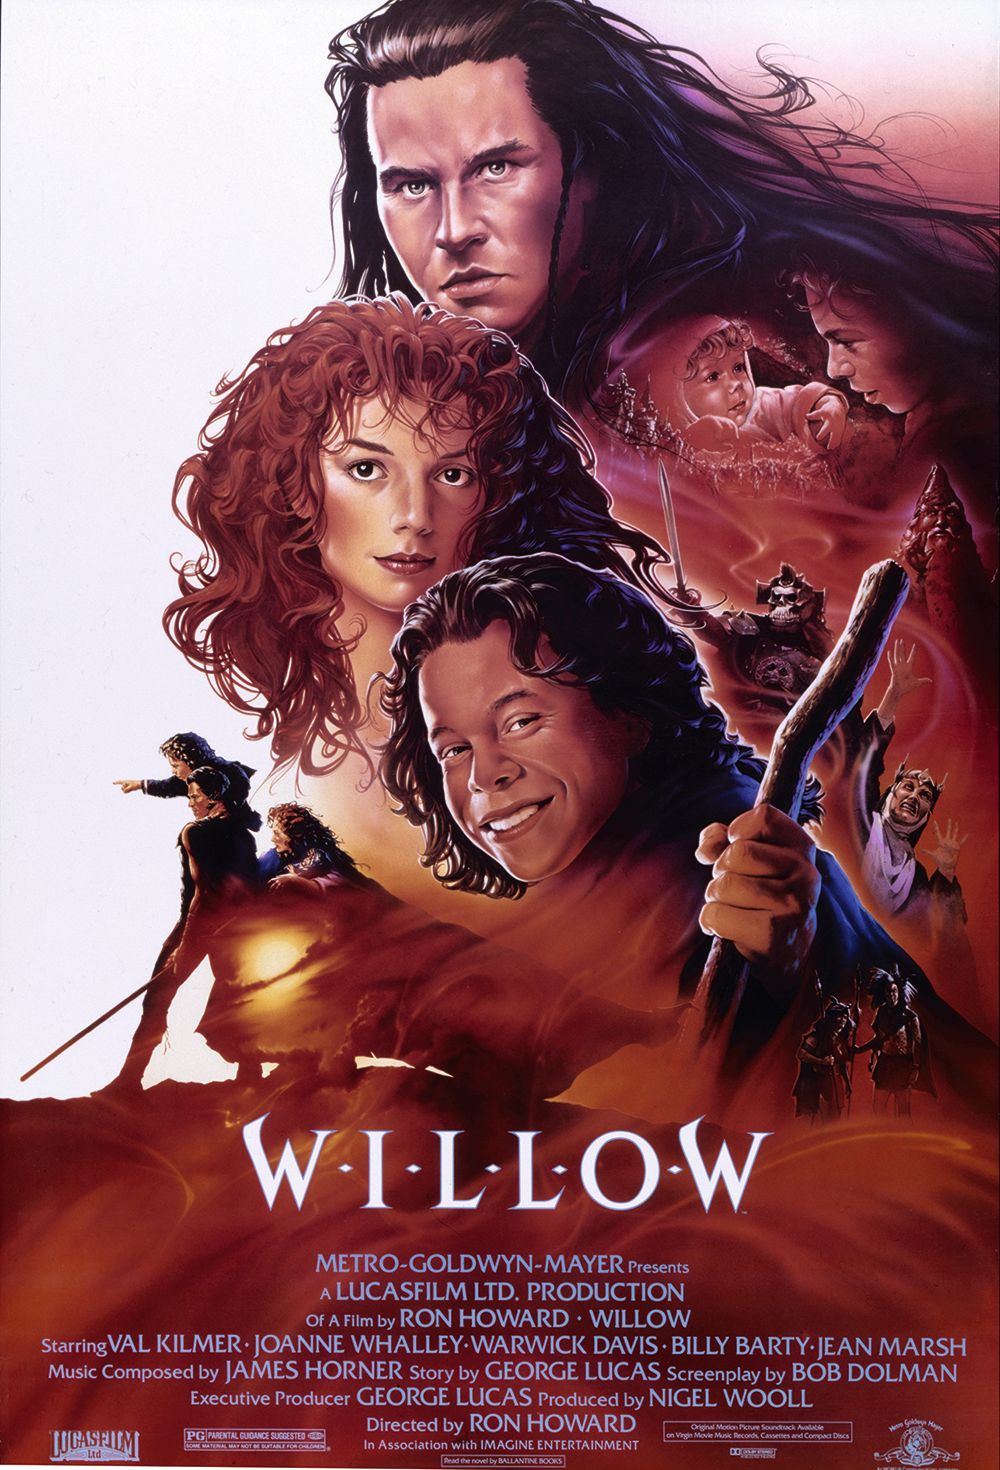 Hier ist das letzte Teaser-Poster für Willow, das von John Alvin gemalt wurde. Das negative Leerzeichen links weist darauf hin, dass für den Betrachter und die Charaktere noch mehr zu tun ist